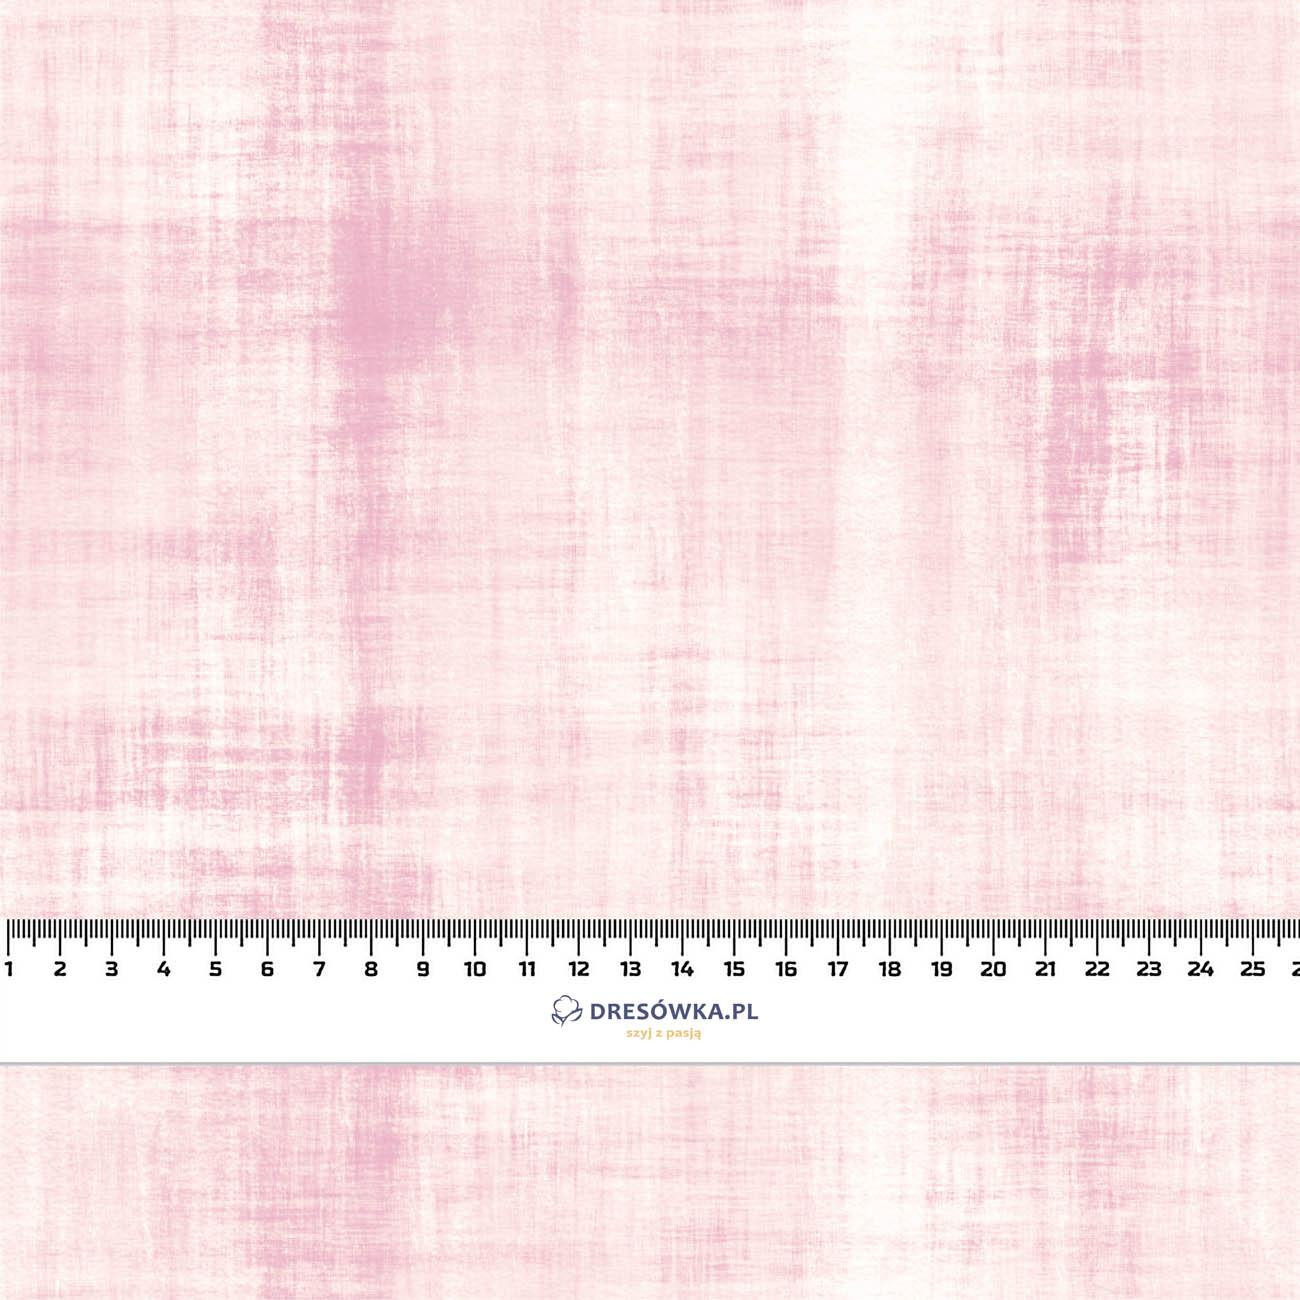 ACID WASH PAT. 2 (pale pink) - light brushed knitwear